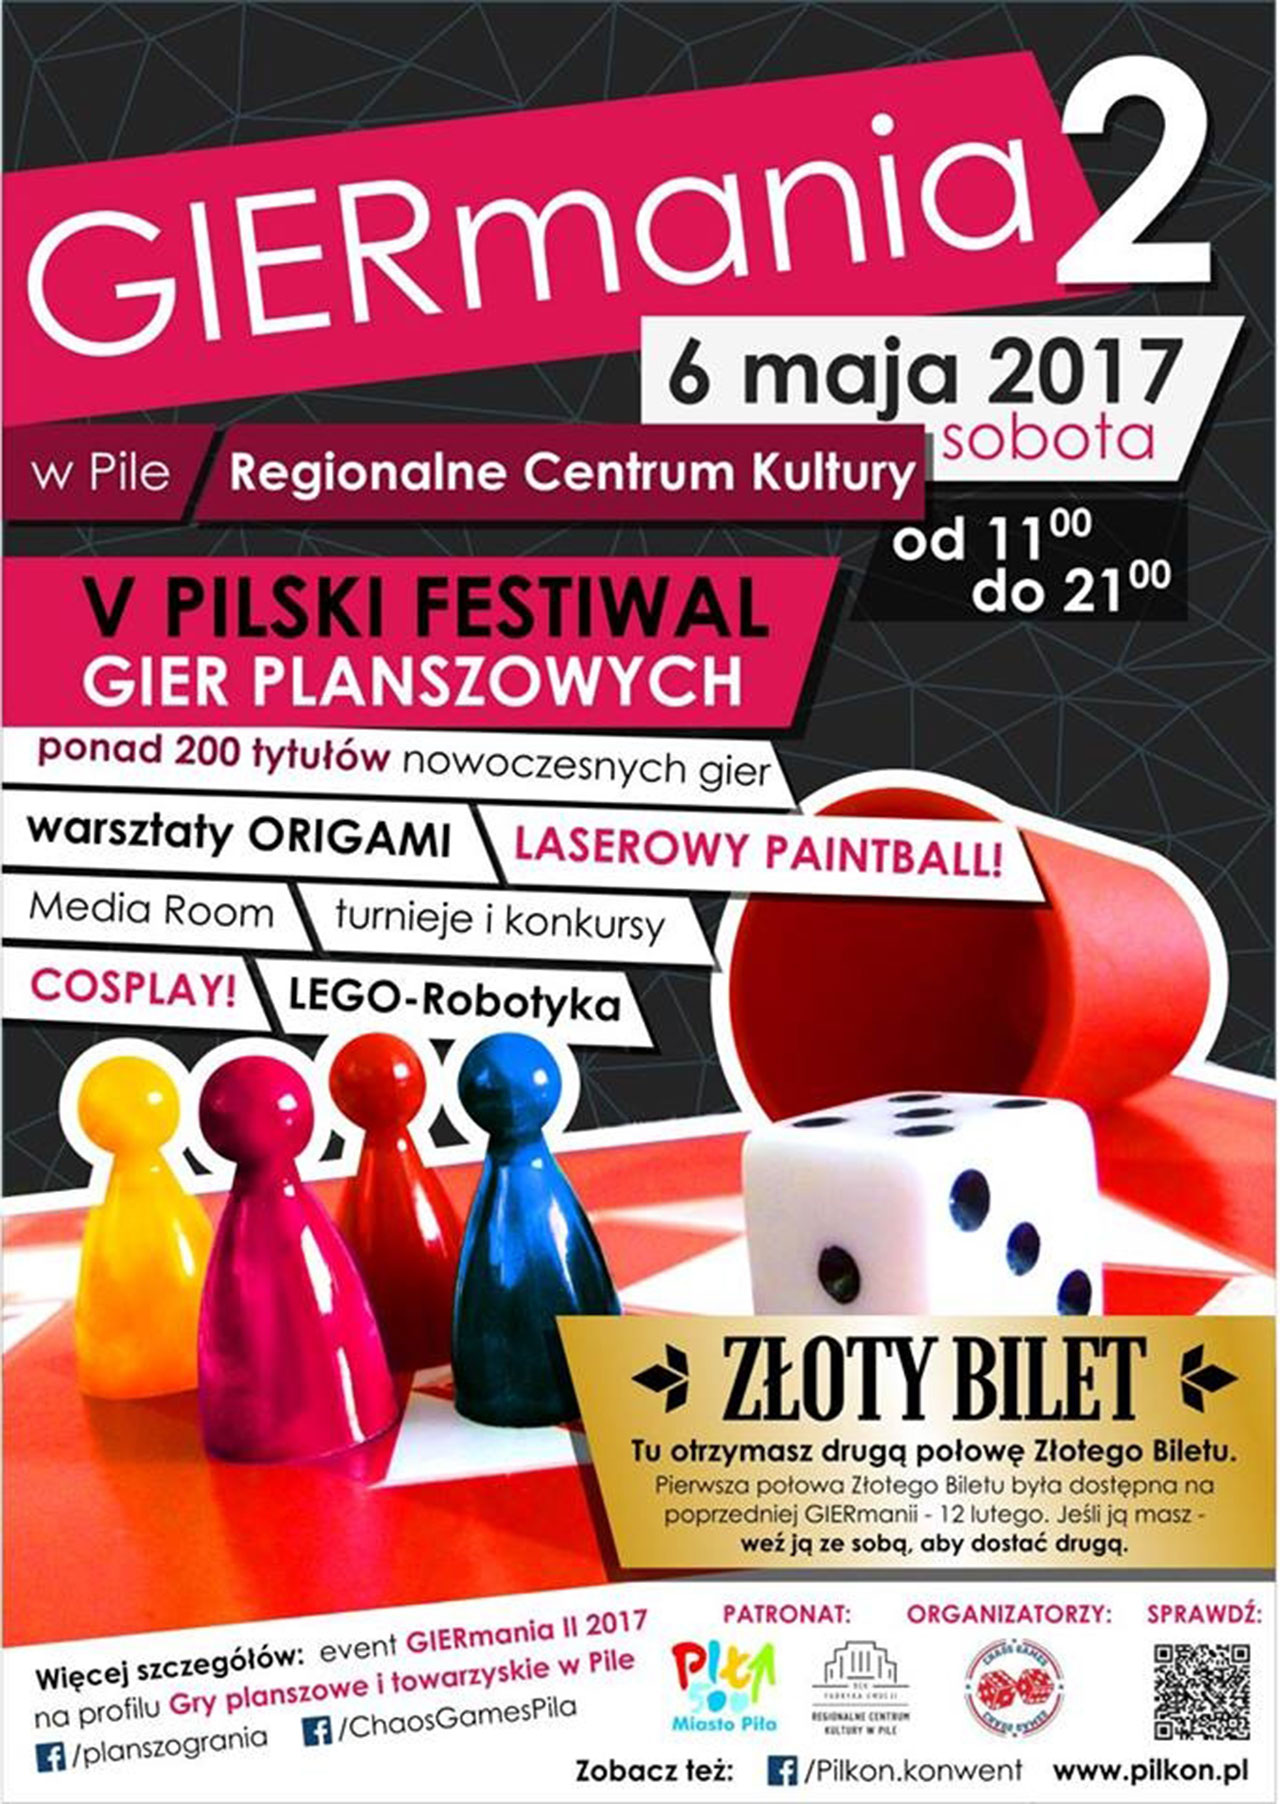 Festiwal Gier Planszowych